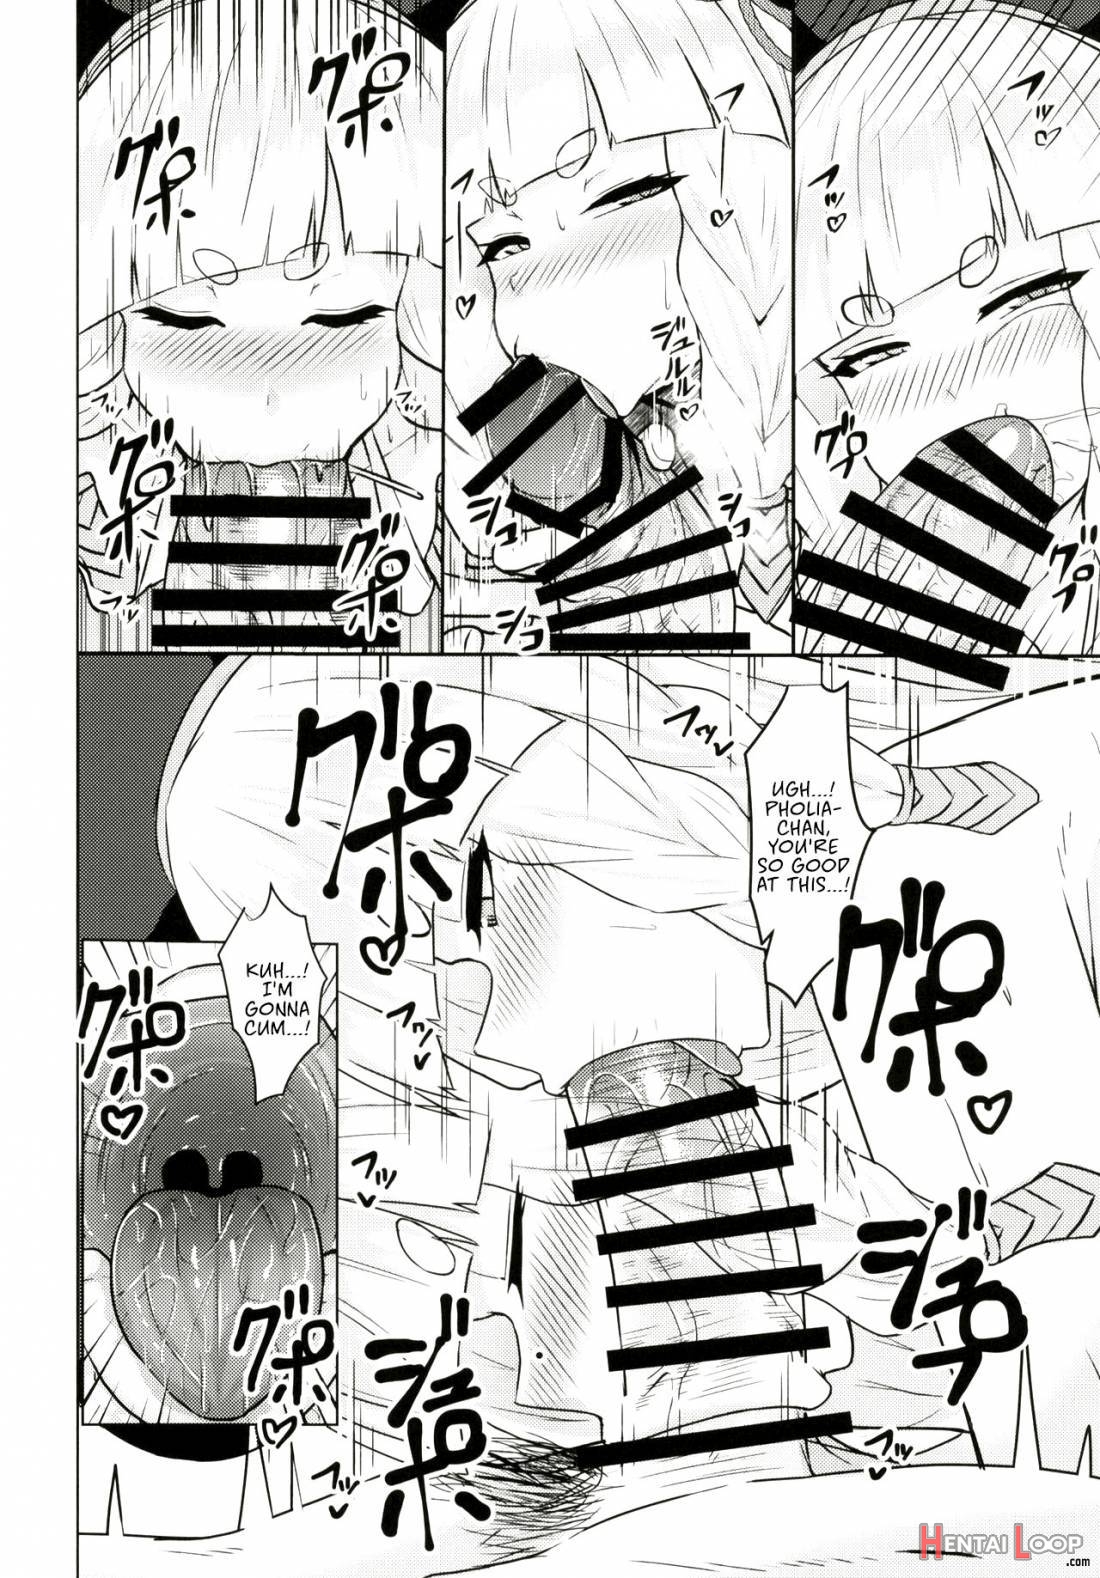 Pholia-chan-san JuuXX-sai page 7